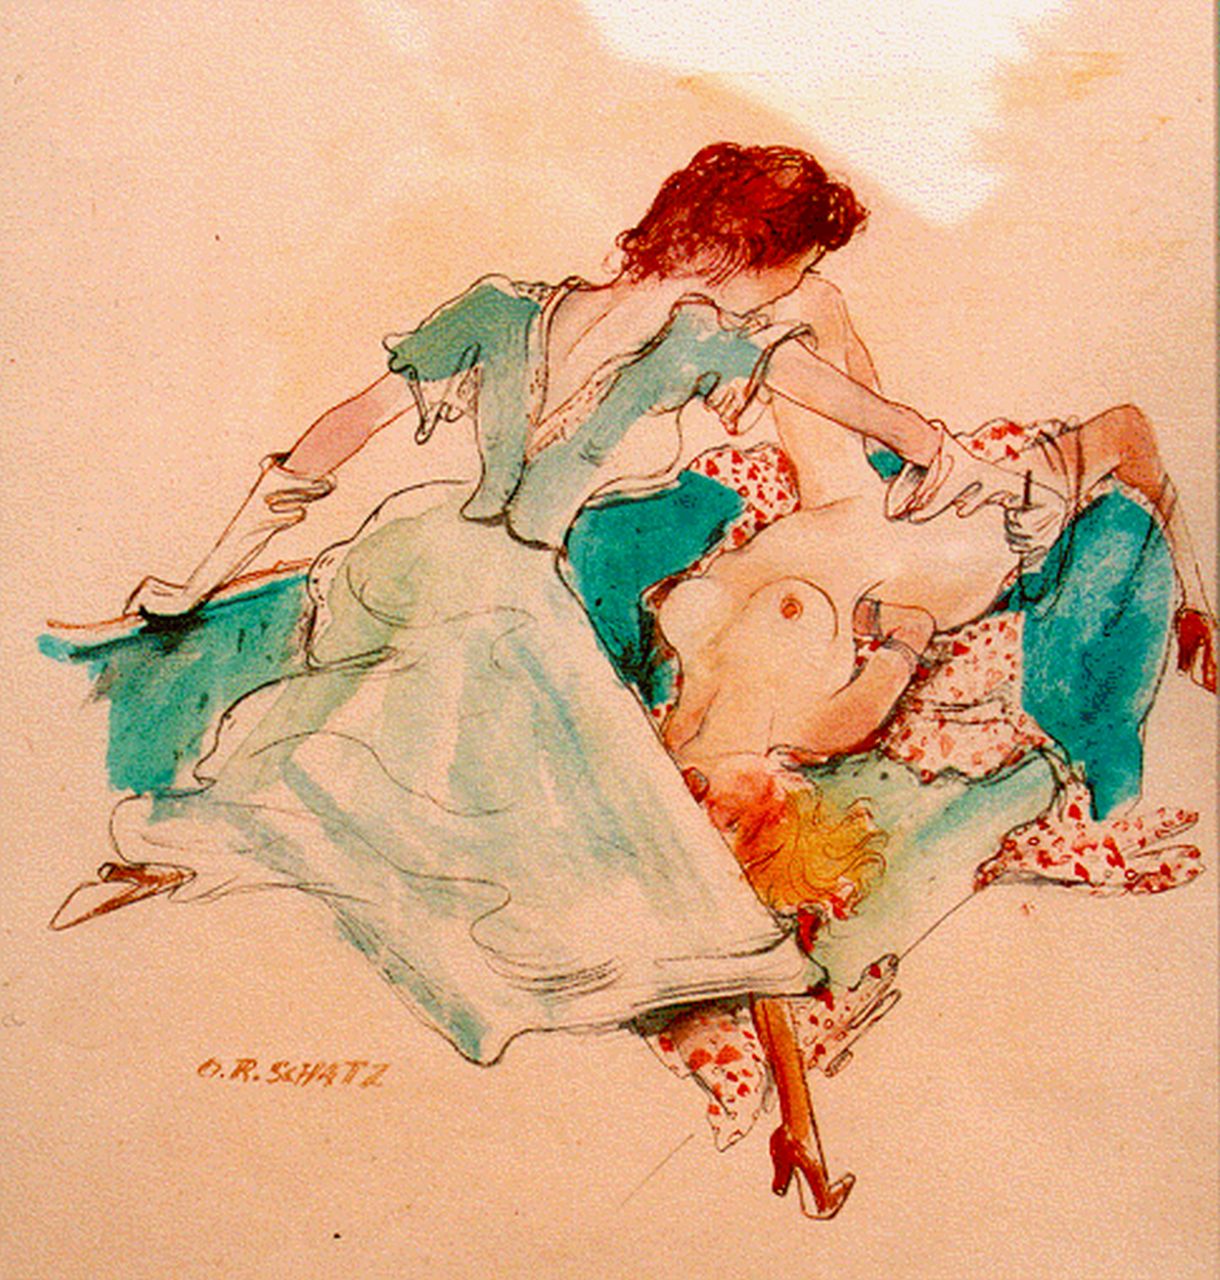 Schatz O.R.  | Otto Rudolf Schatz, Erotische scene, aquarel op papier 29,0 x 27,0 cm, gesigneerd rechtsonder